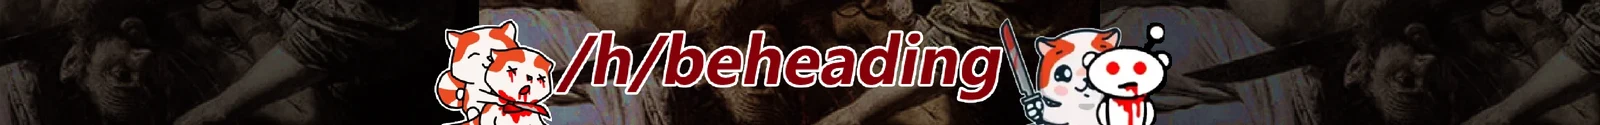 /h/beheading banner